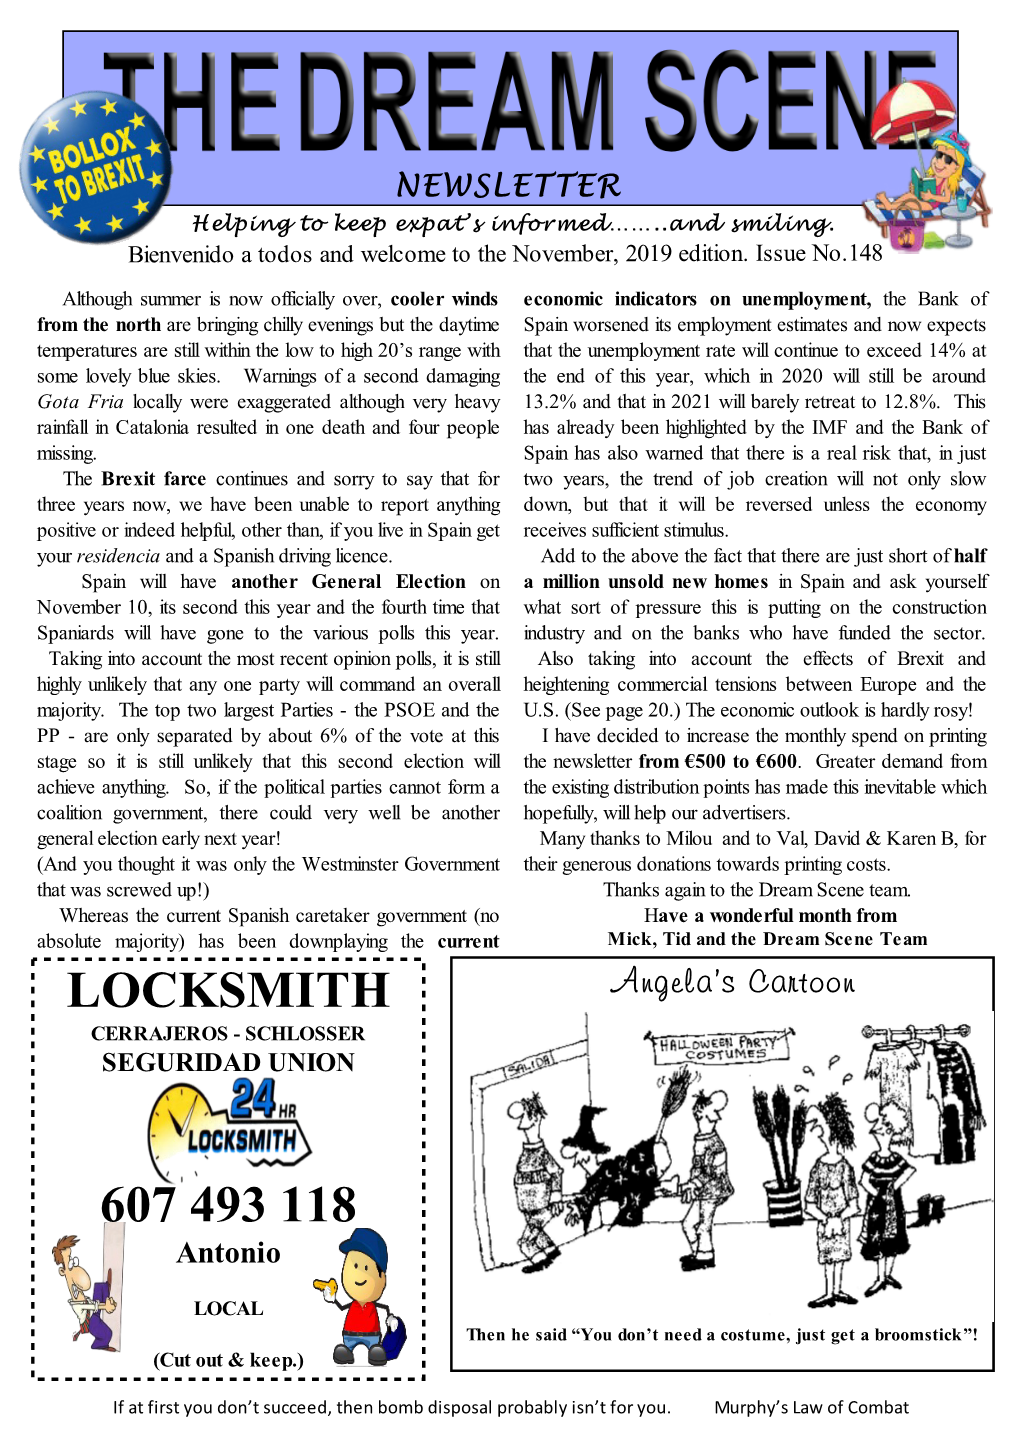 Locksmith Cerrajeros - Schlosser Seguridad Union